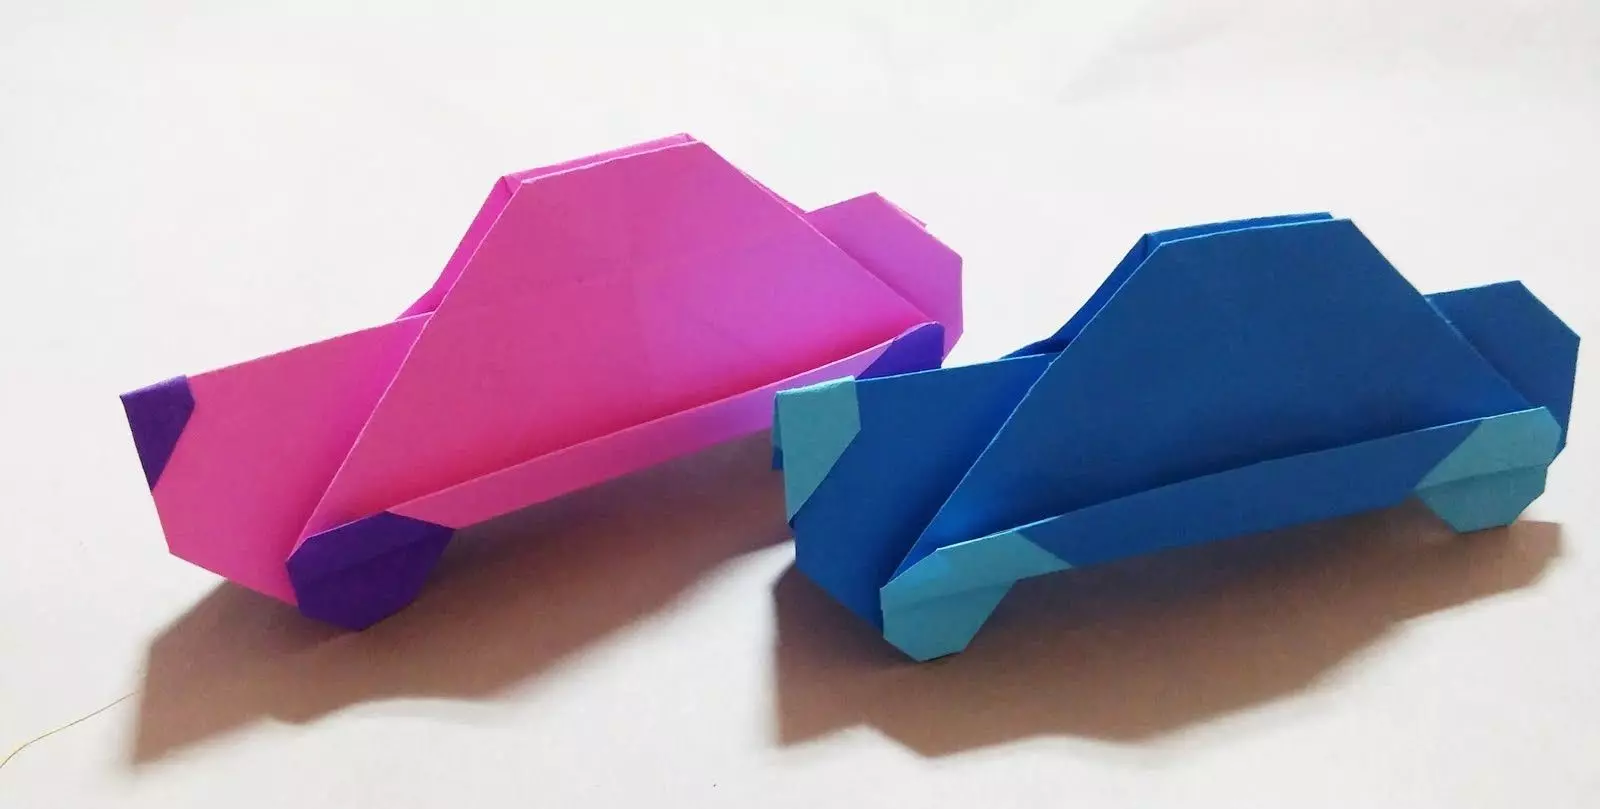 کاغذ اریگامی برای کودکان 7-8 ساله: طرح های ساده برای پسران و دختران. چگونه اریگامی را در مراحل انجام دهید؟ 26984_53